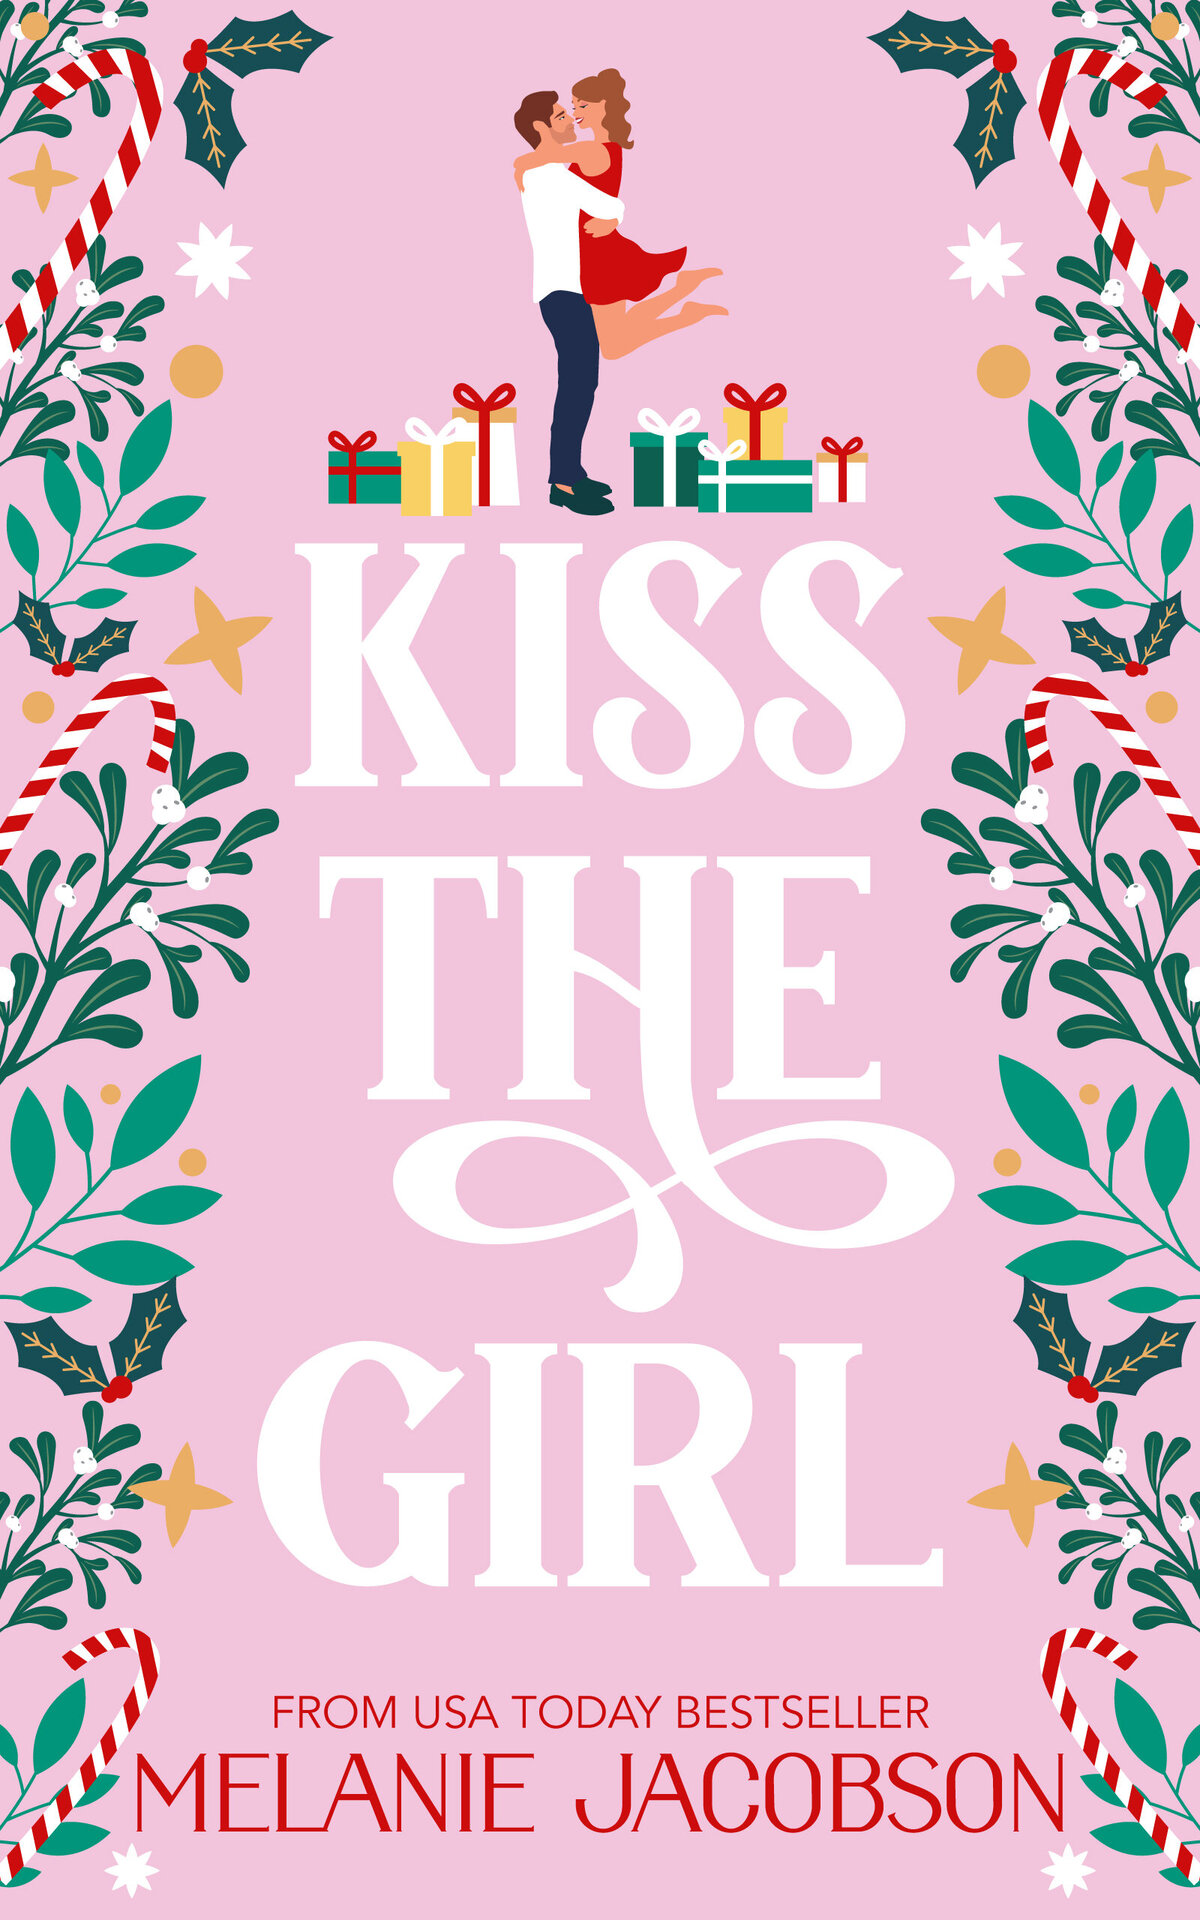 Kiss-The-Girl-Final-Pink-JPEG-HIGH